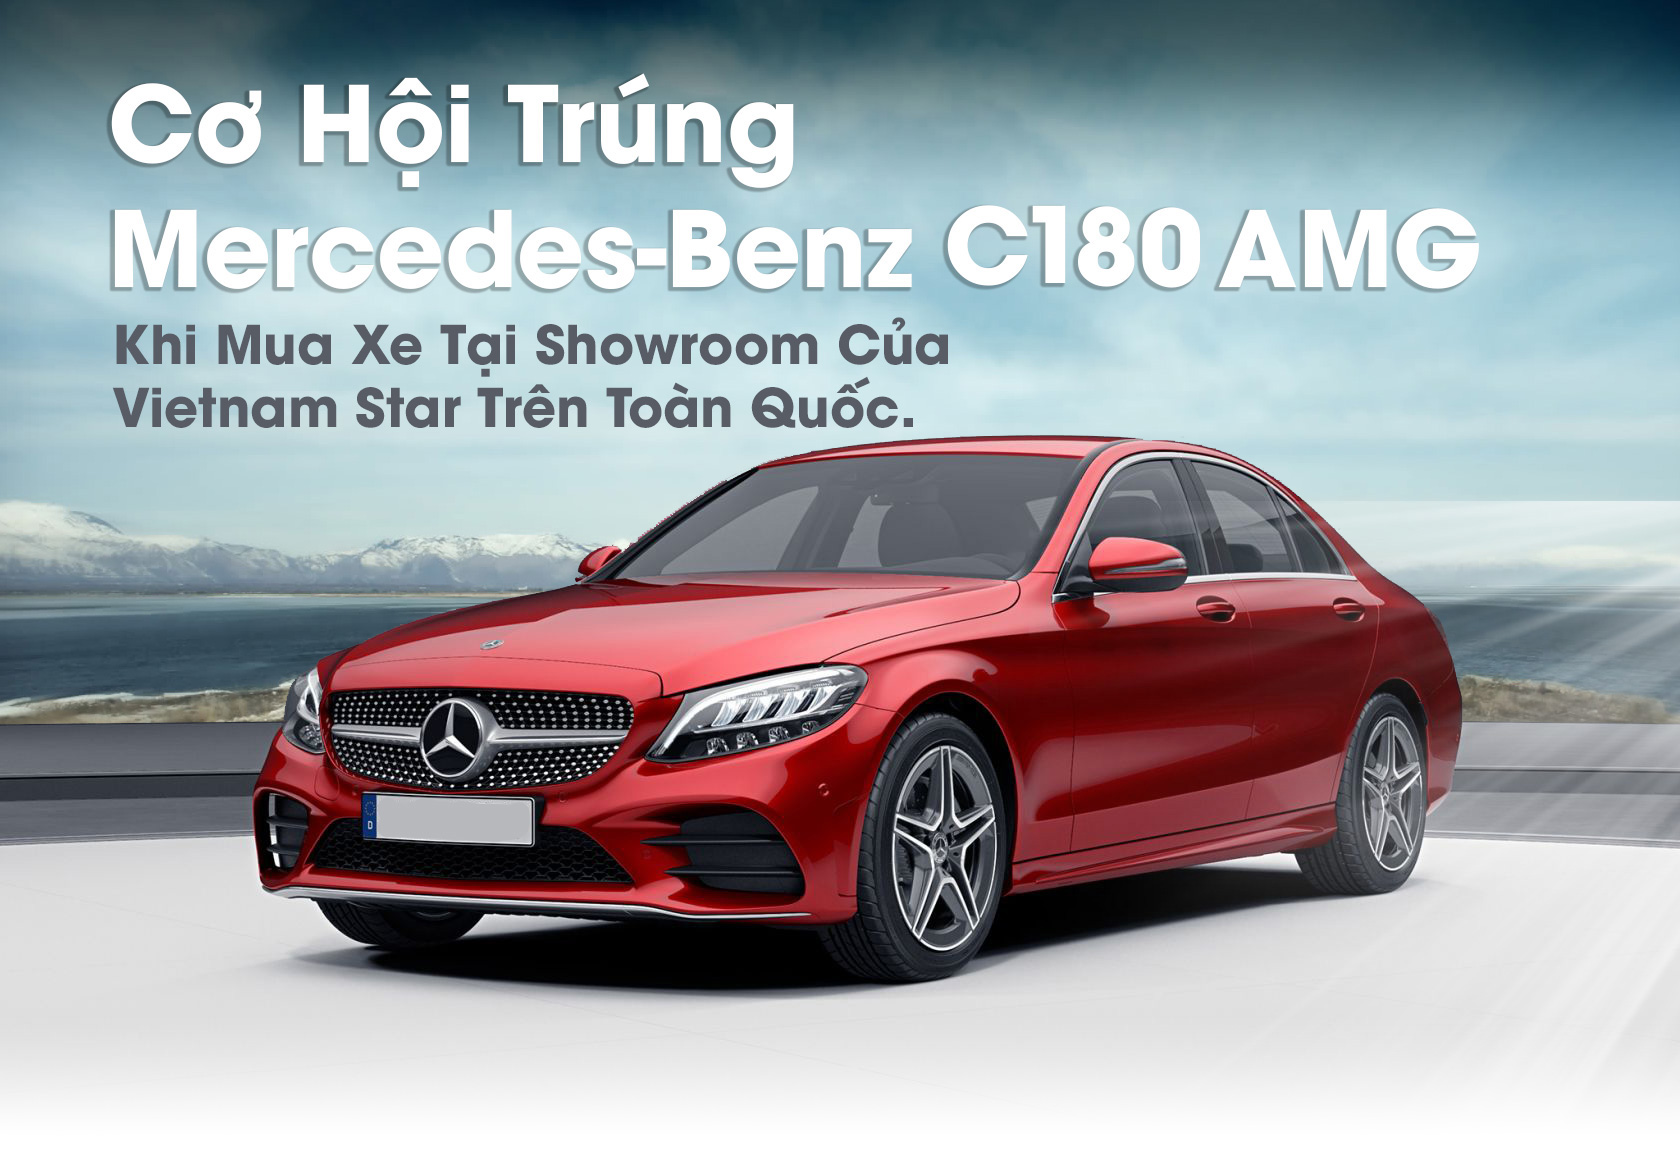 Cơ hội trúng Mercedes-Benz khi mua xe tại showroom của Vietnam Star trên toàn quốc - 1